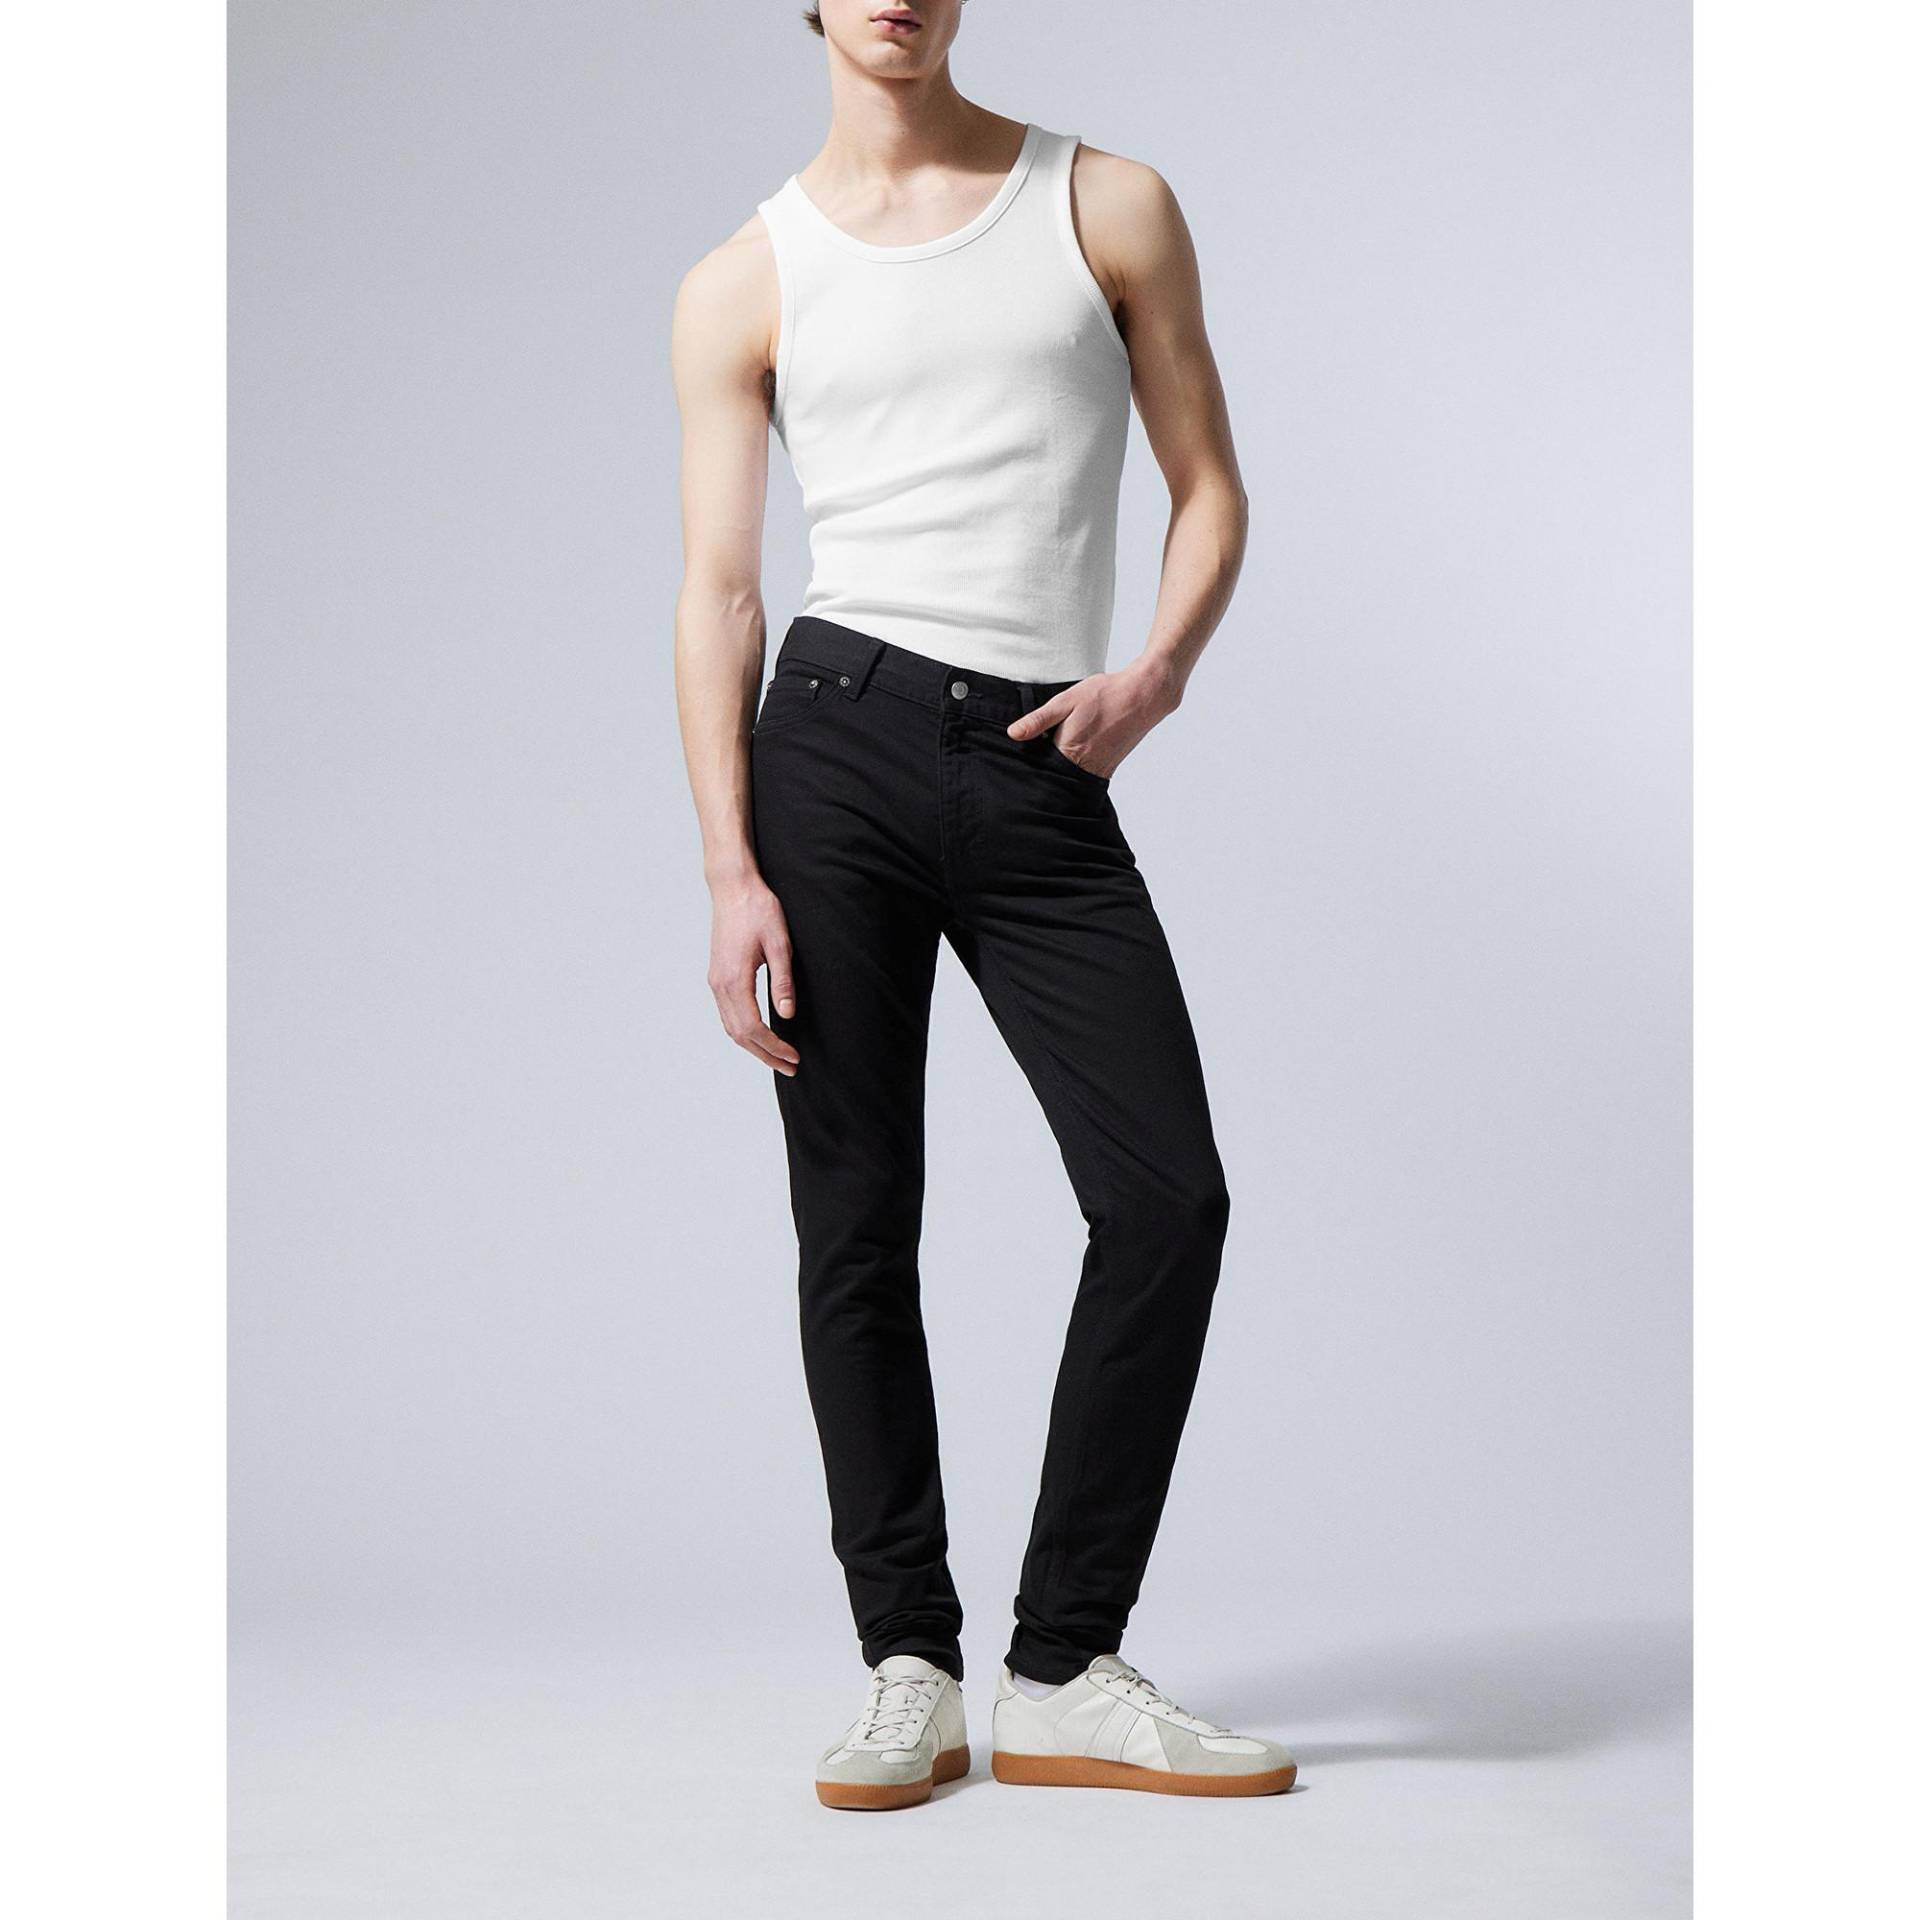 Jeans, Skinny Fit Herren Black L30/W33 von WEEKDAY